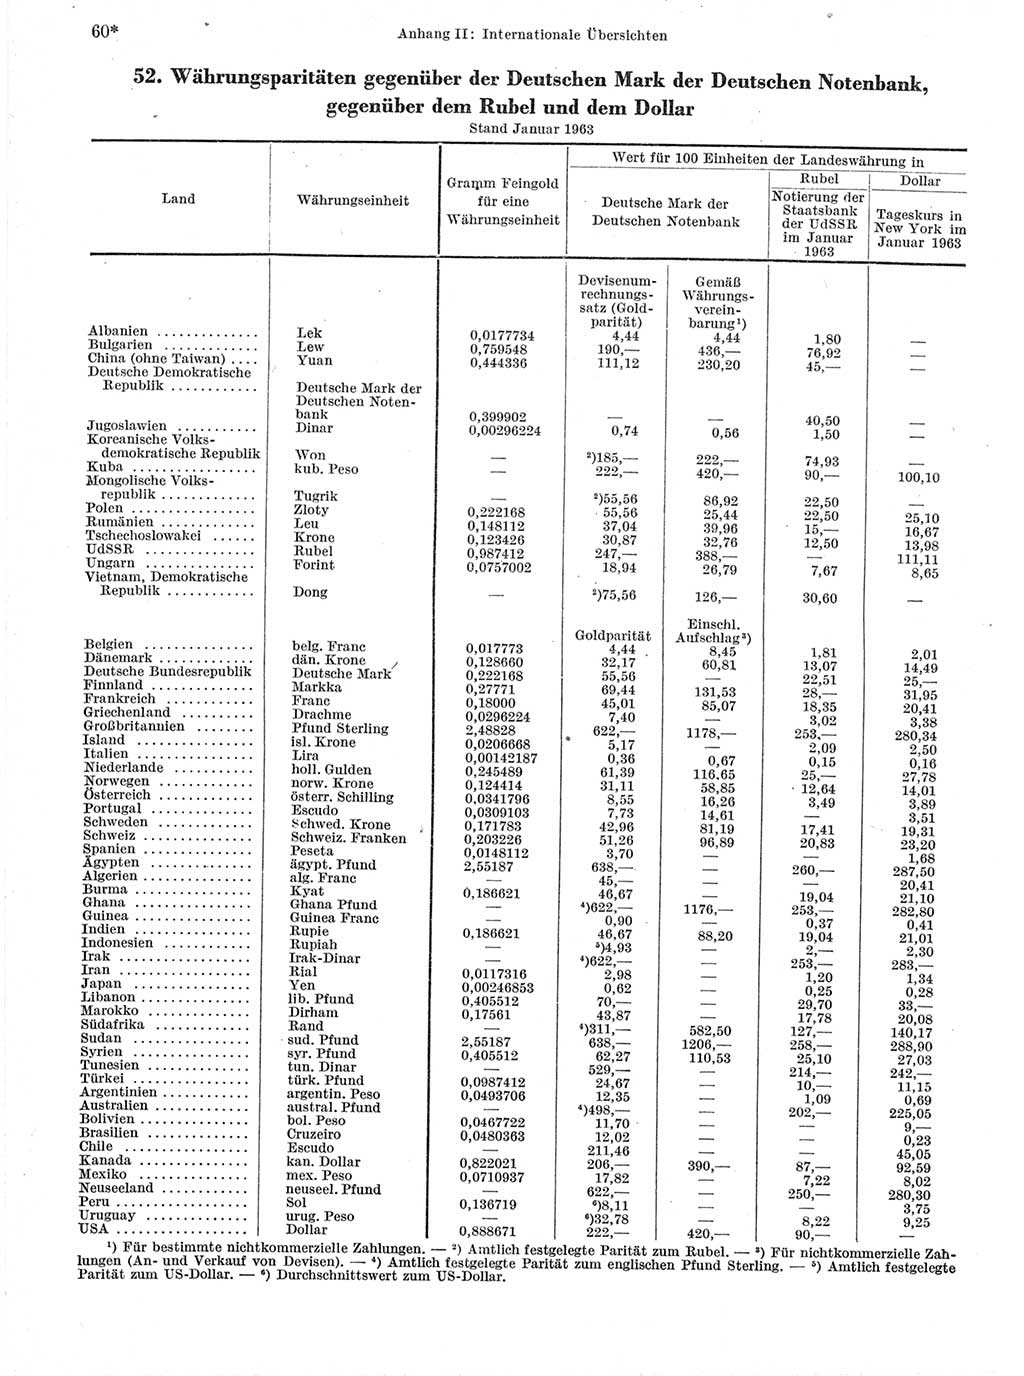 Statistisches Jahrbuch der Deutschen Demokratischen Republik (DDR) 1963, Seite 60 (Stat. Jb. DDR 1963, S. 60)